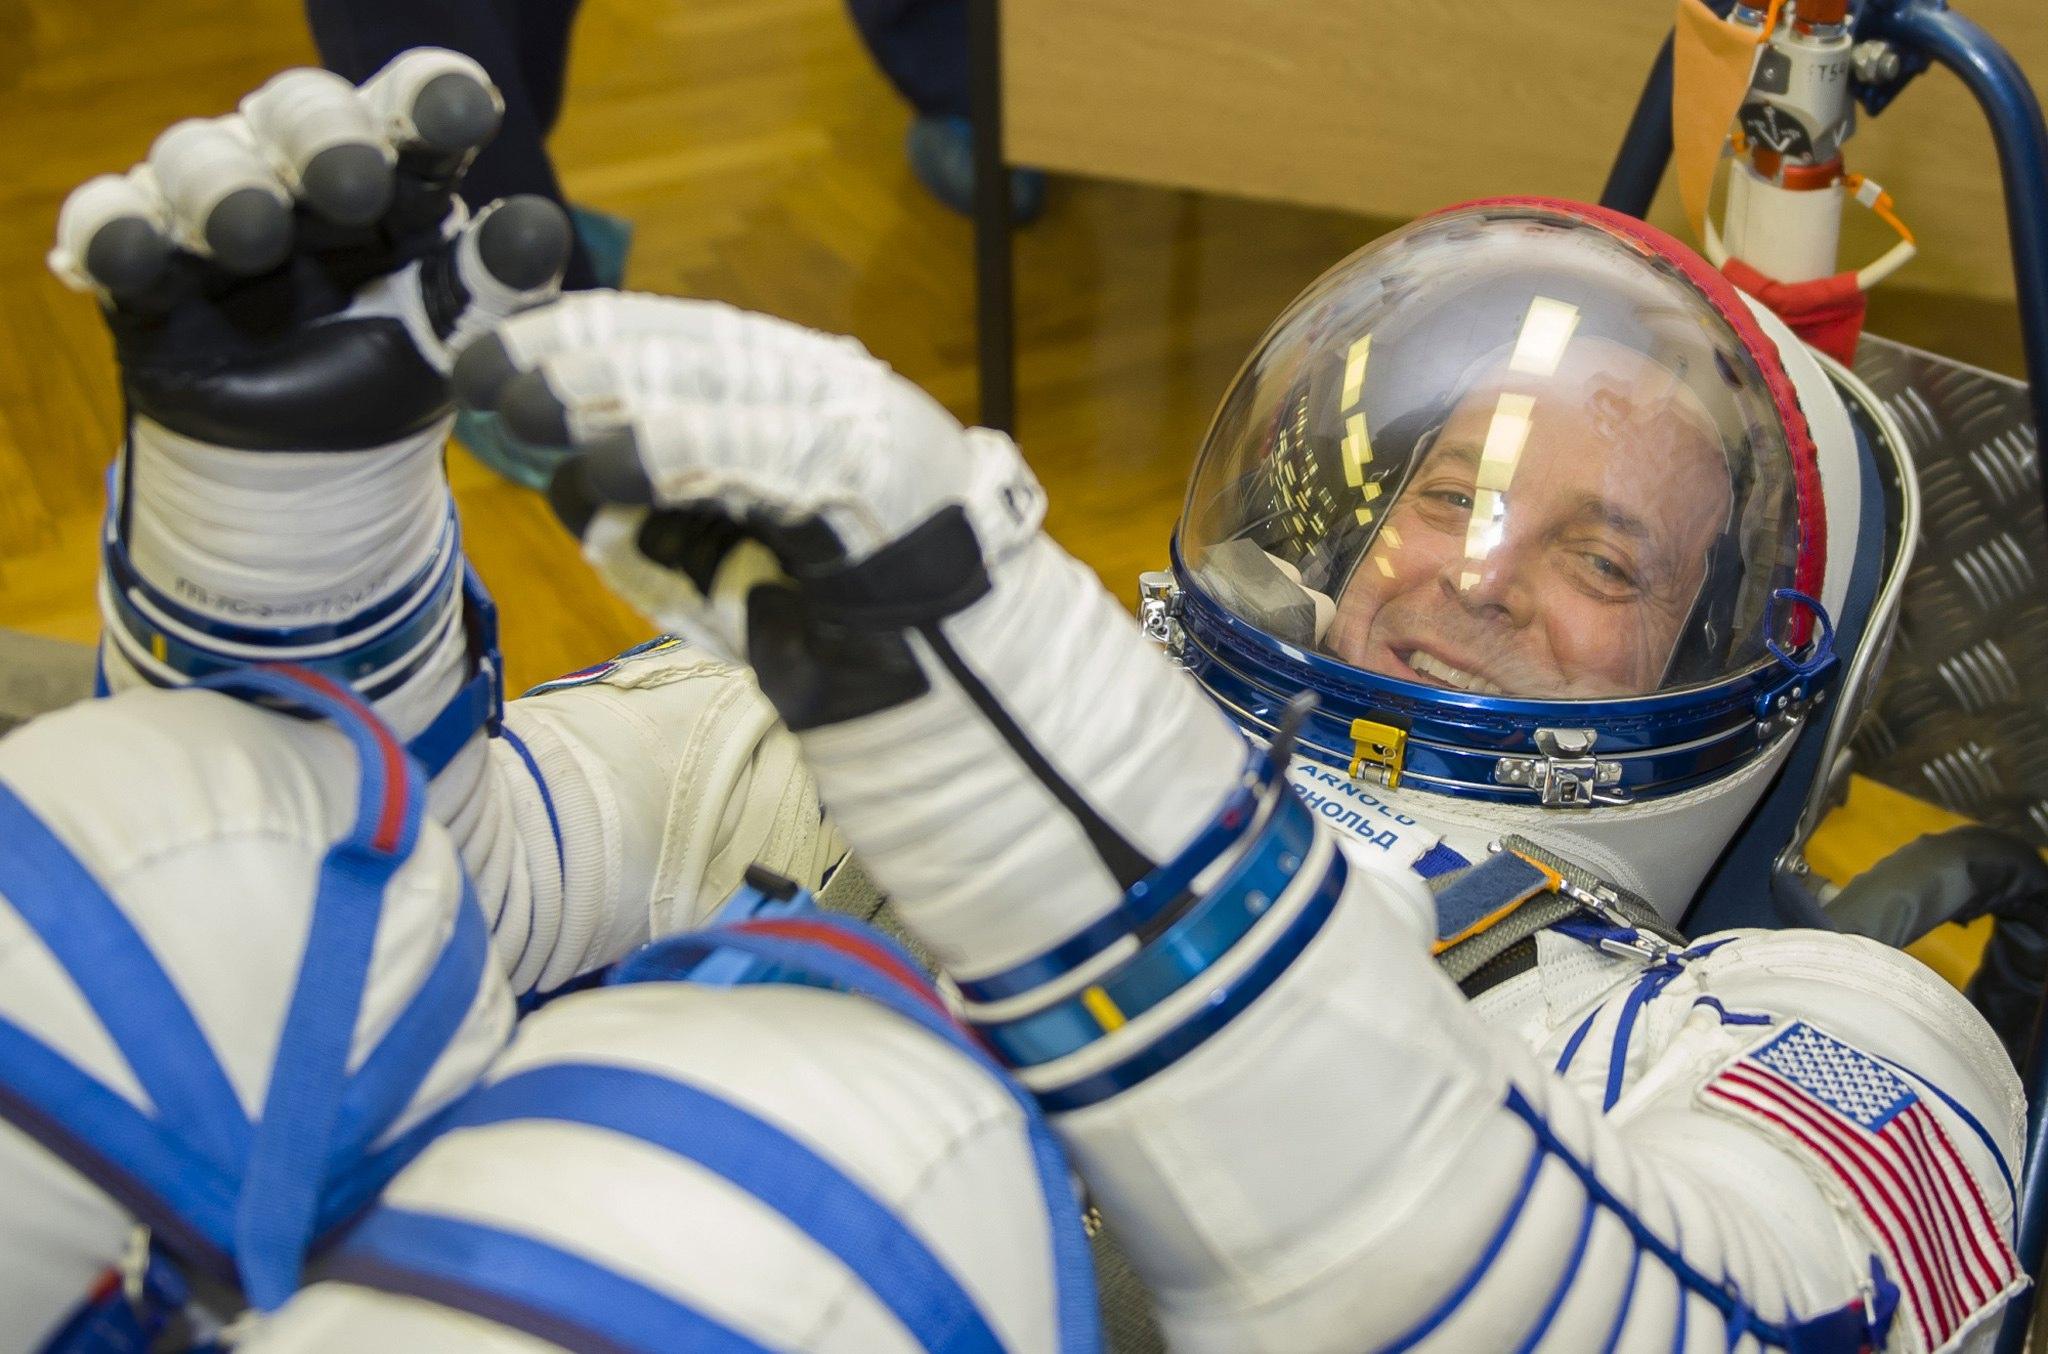 L’astronauta della NASA Richard Arnold in tuta spaziale sorride in attesa del lancio